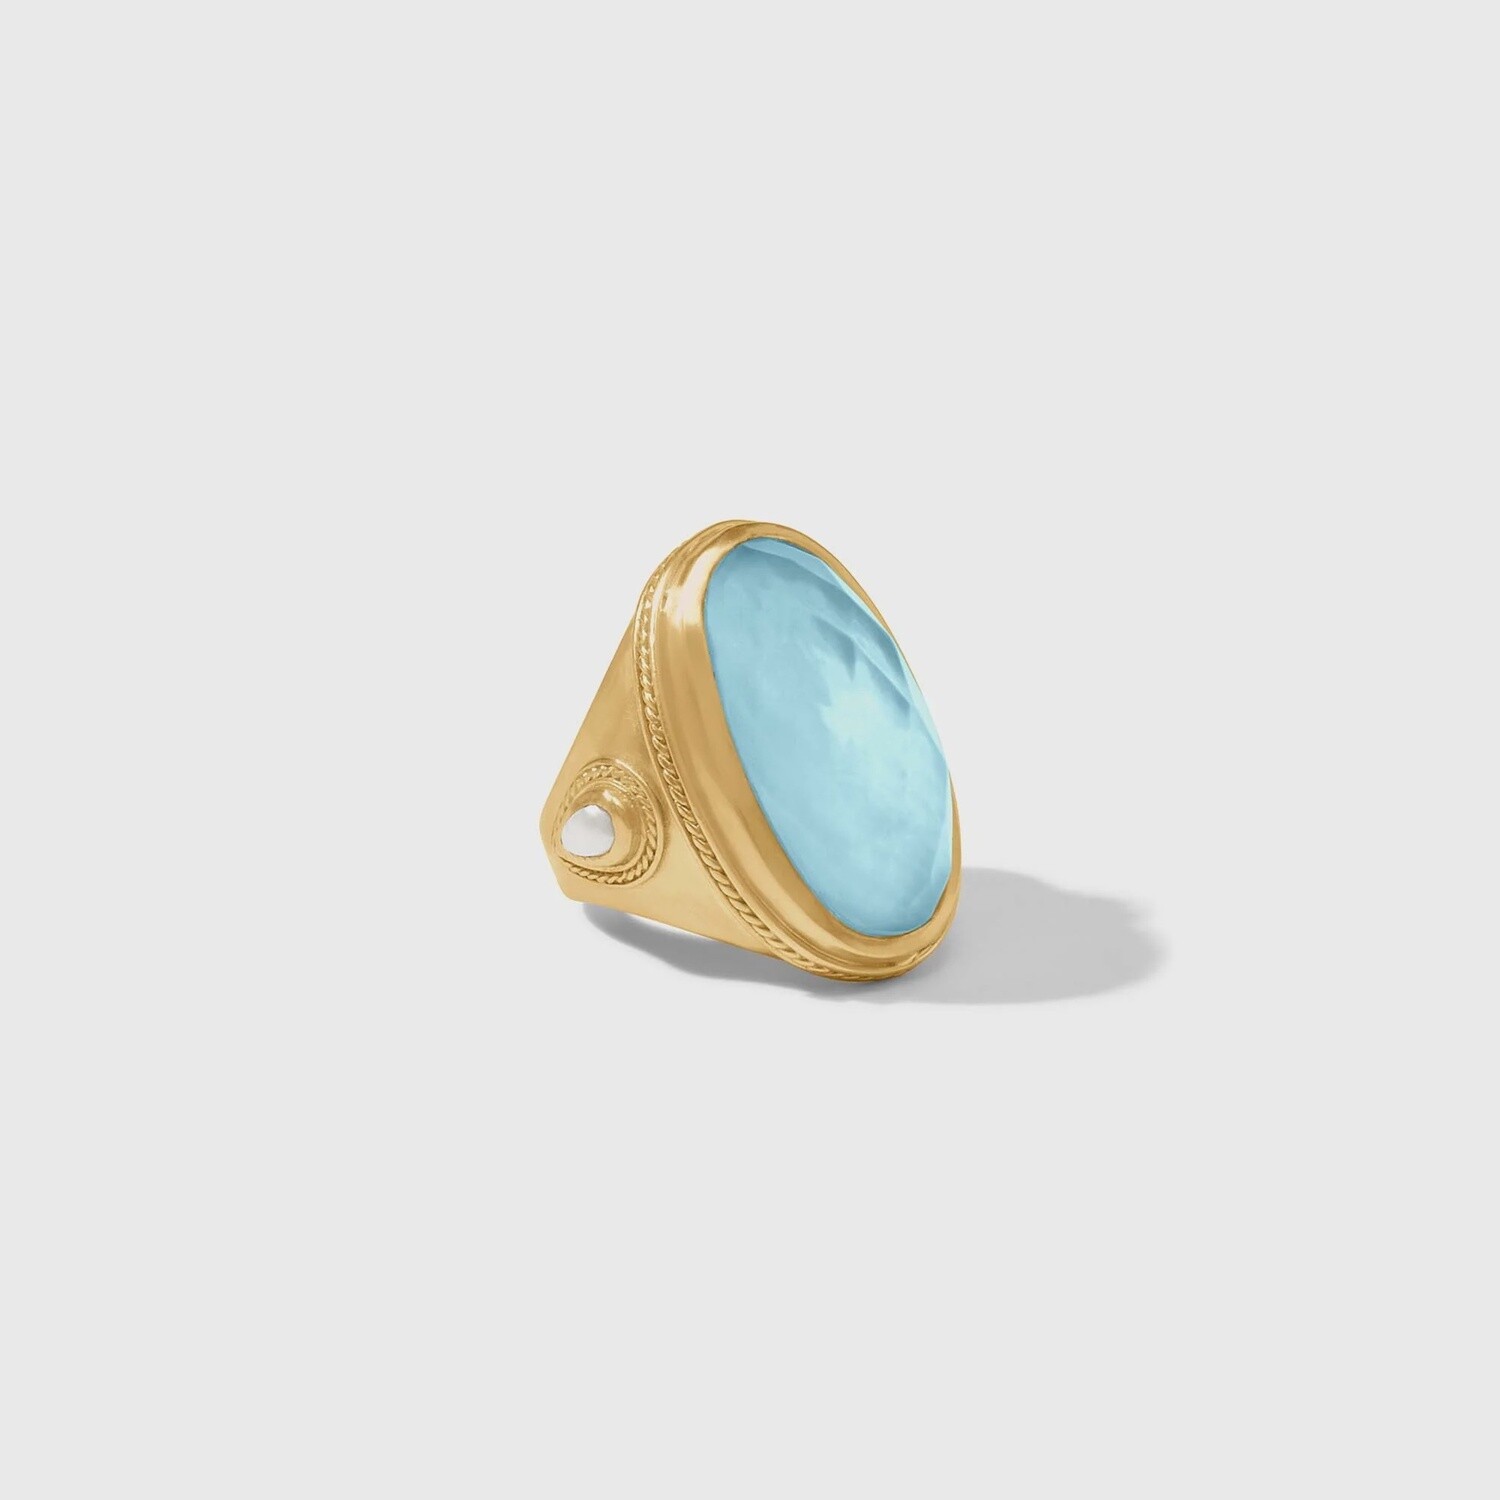 Julie Vos Cannes Gold Statement Ring, Colour: Iridescent Capri Blue, Size: 7